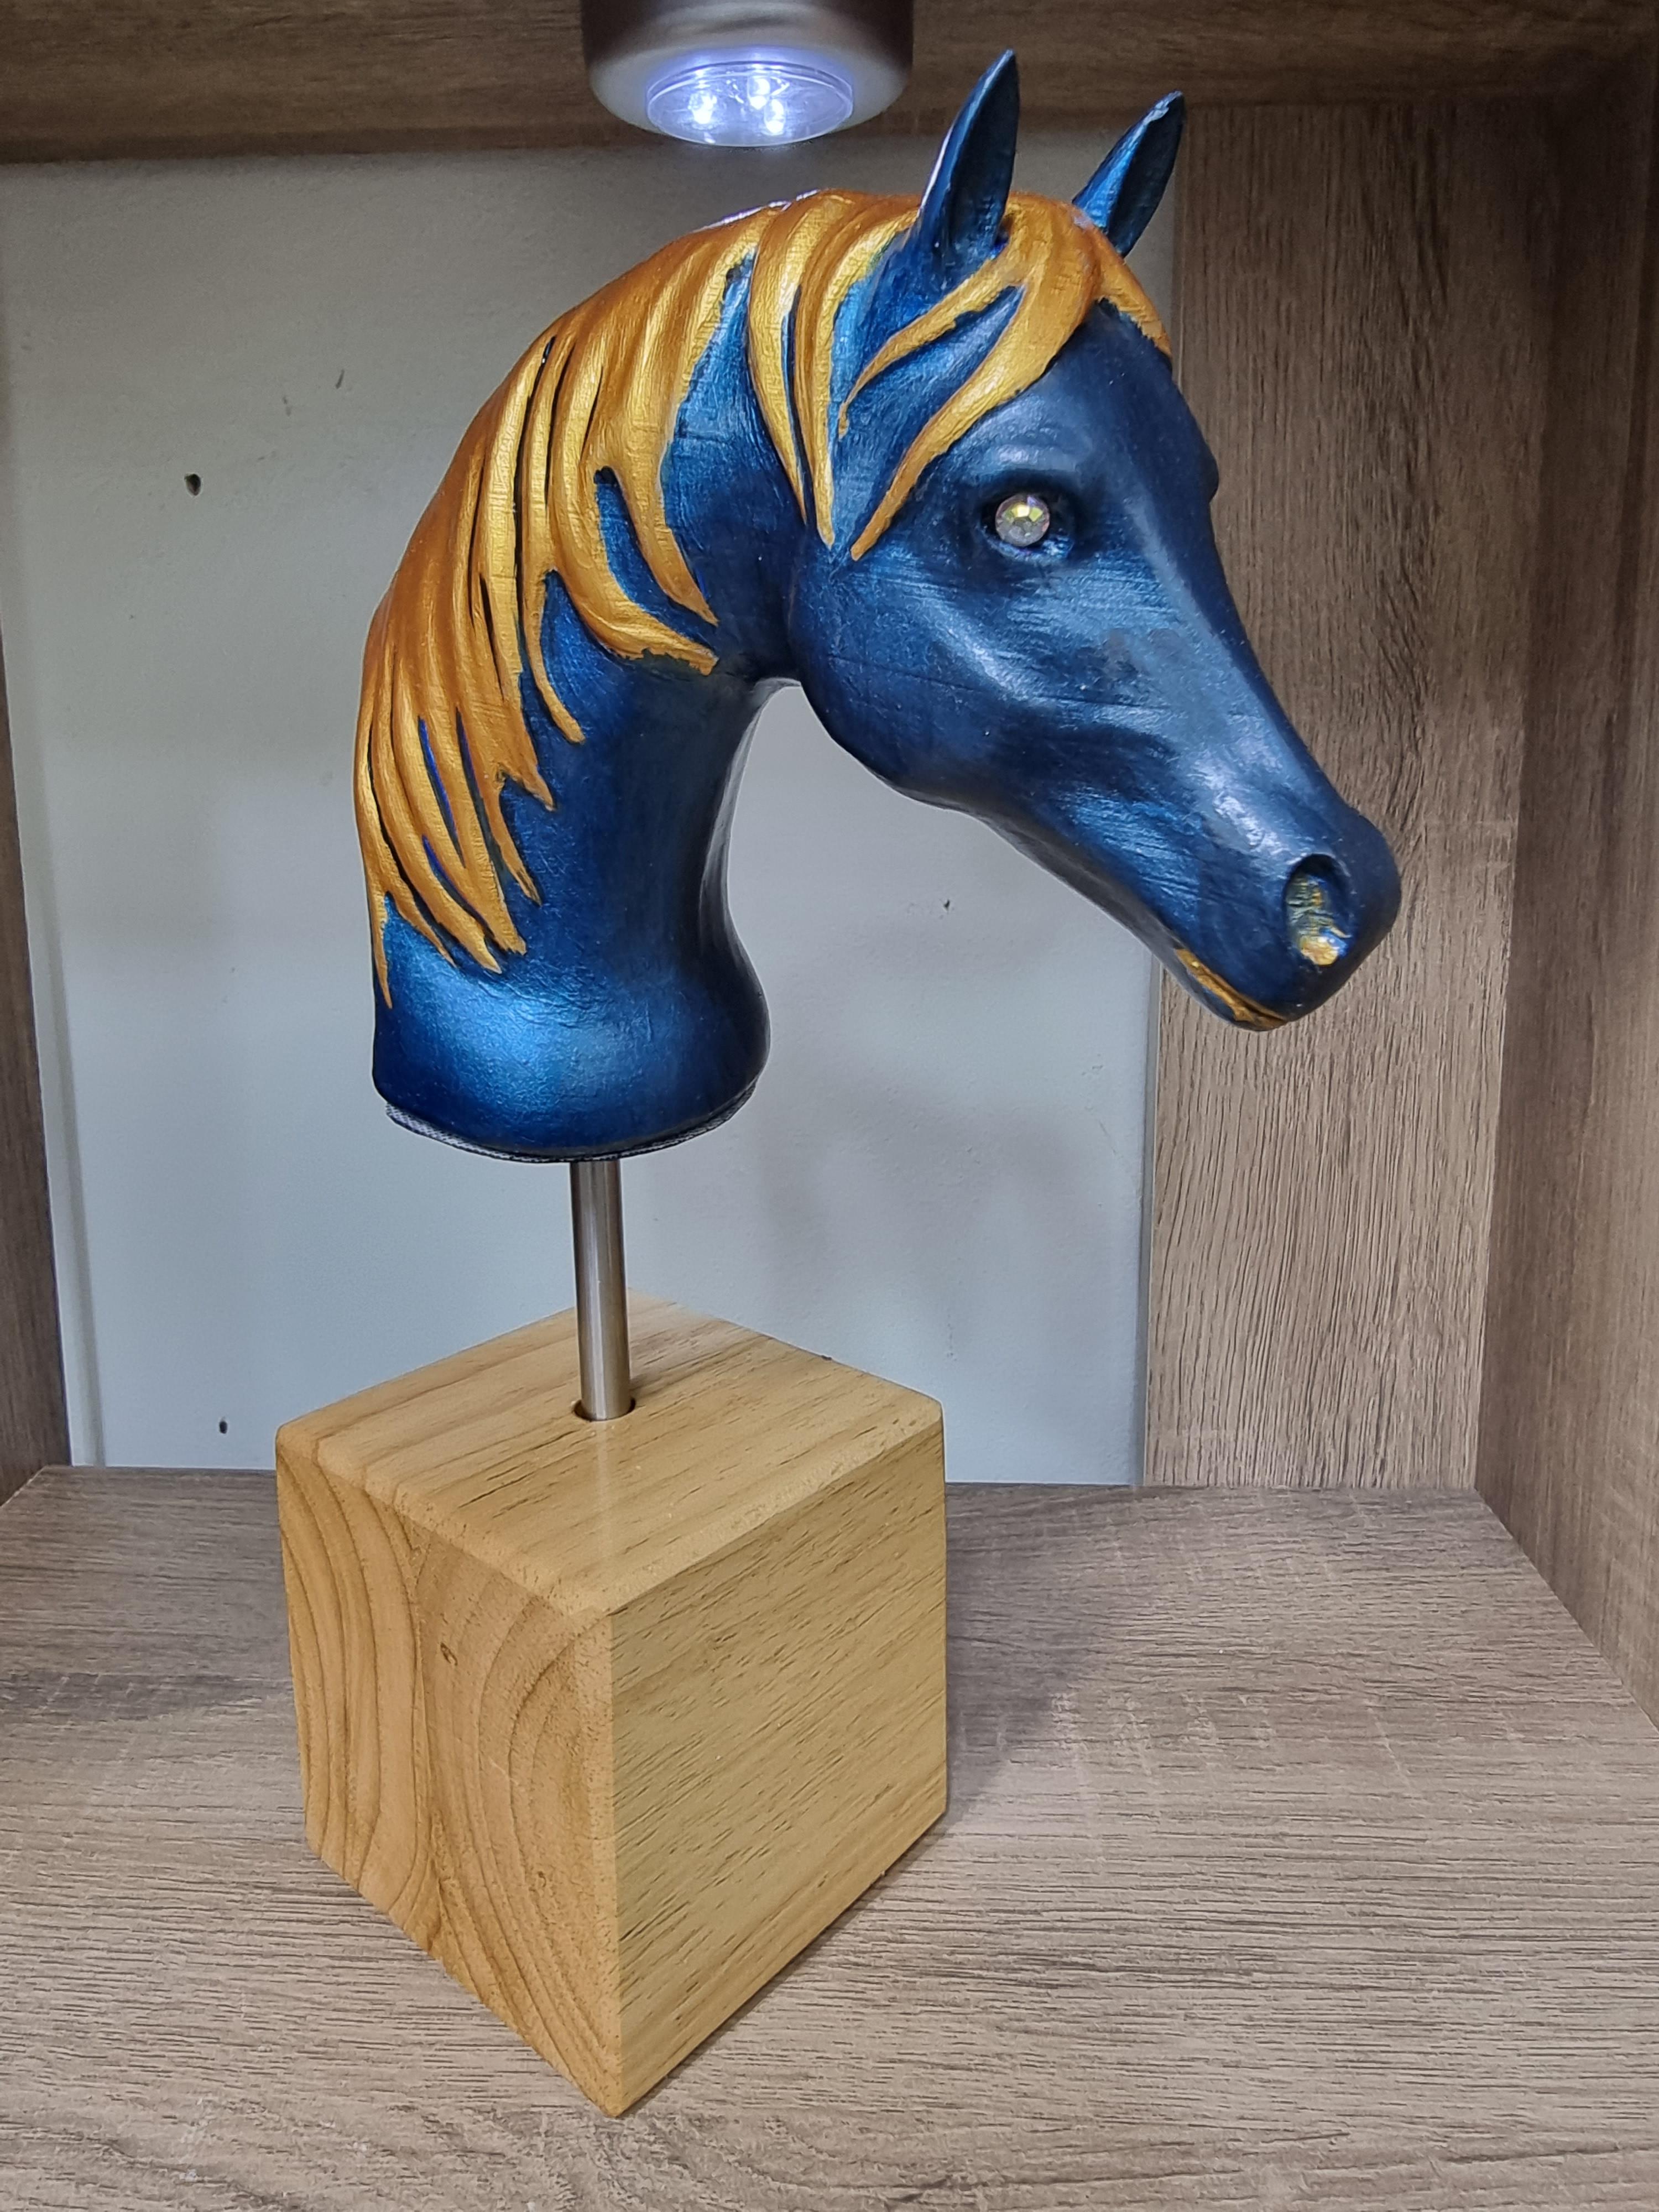 horse.stl 3d model